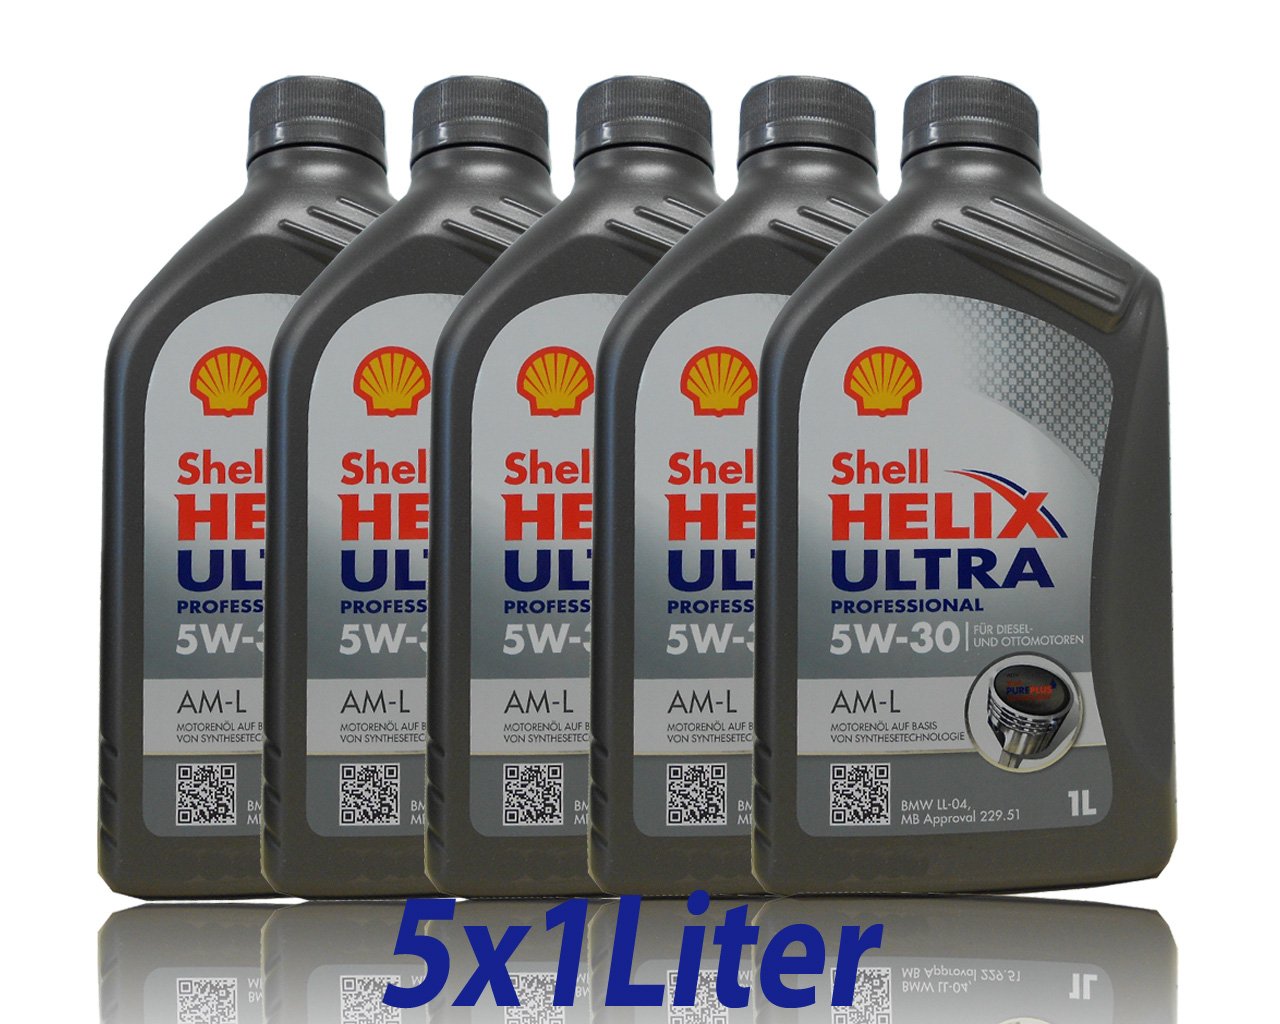 5L 5 Liter SHELL Motoröl Öl HELIX ULTRA Professional AM-L 5W30 für BMW LL-04 von Shell